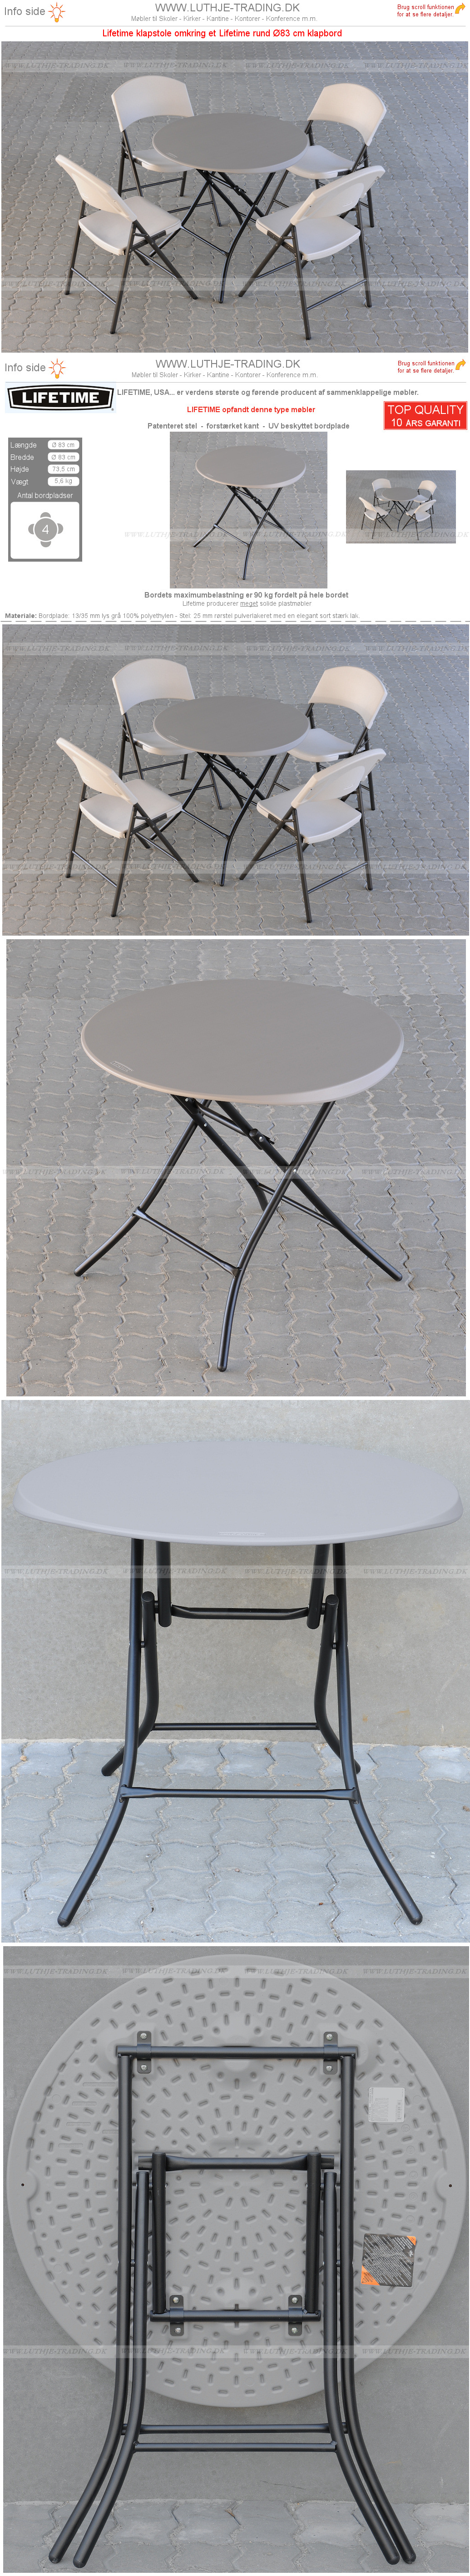 Rundt bord opstilling med Lifetime Ø83 cm og klapstole